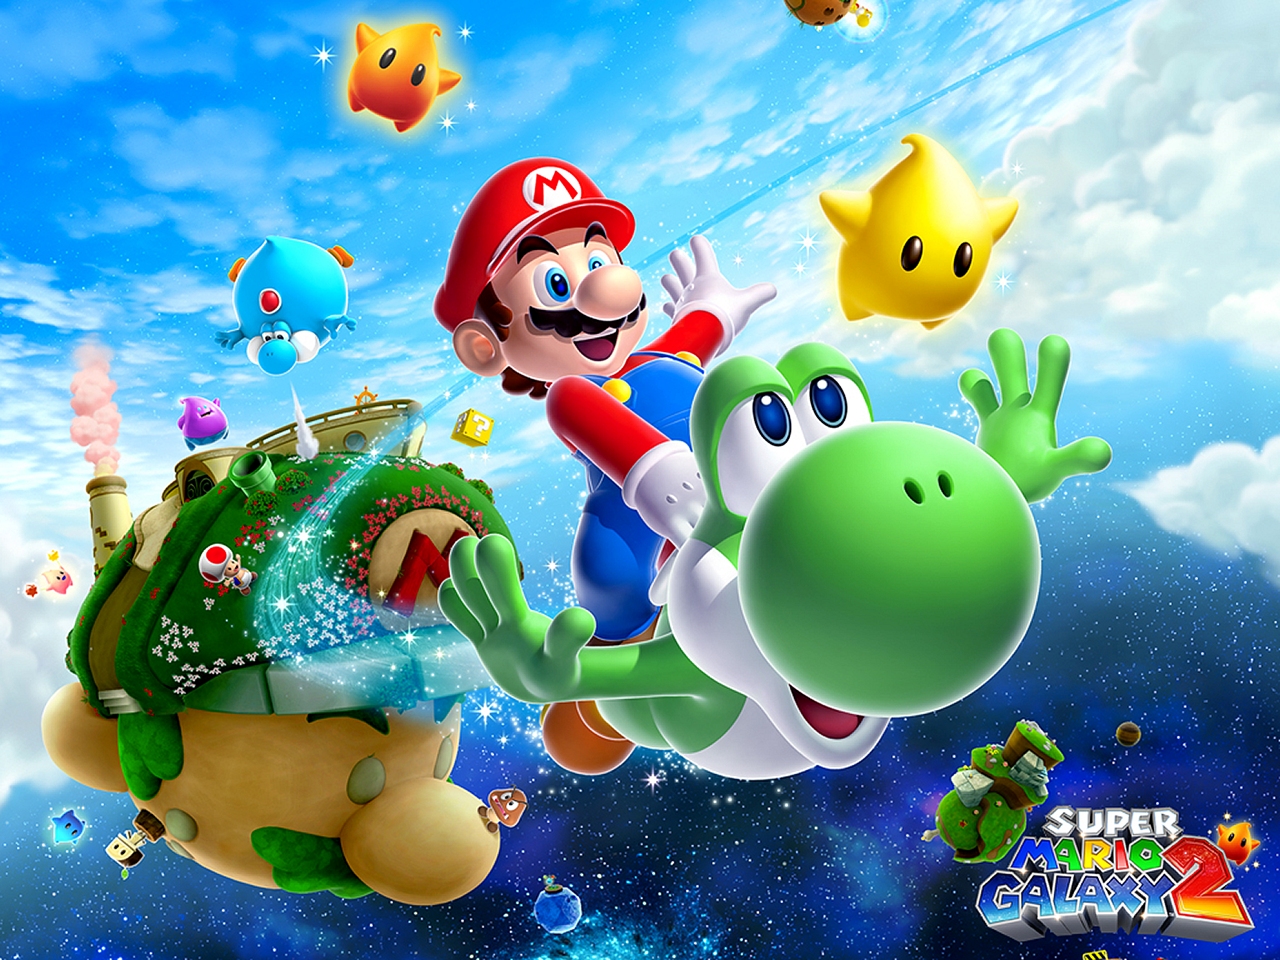 "Super Mario Galaxy 2" desktop wallpaper (1280 x 960 pixels)